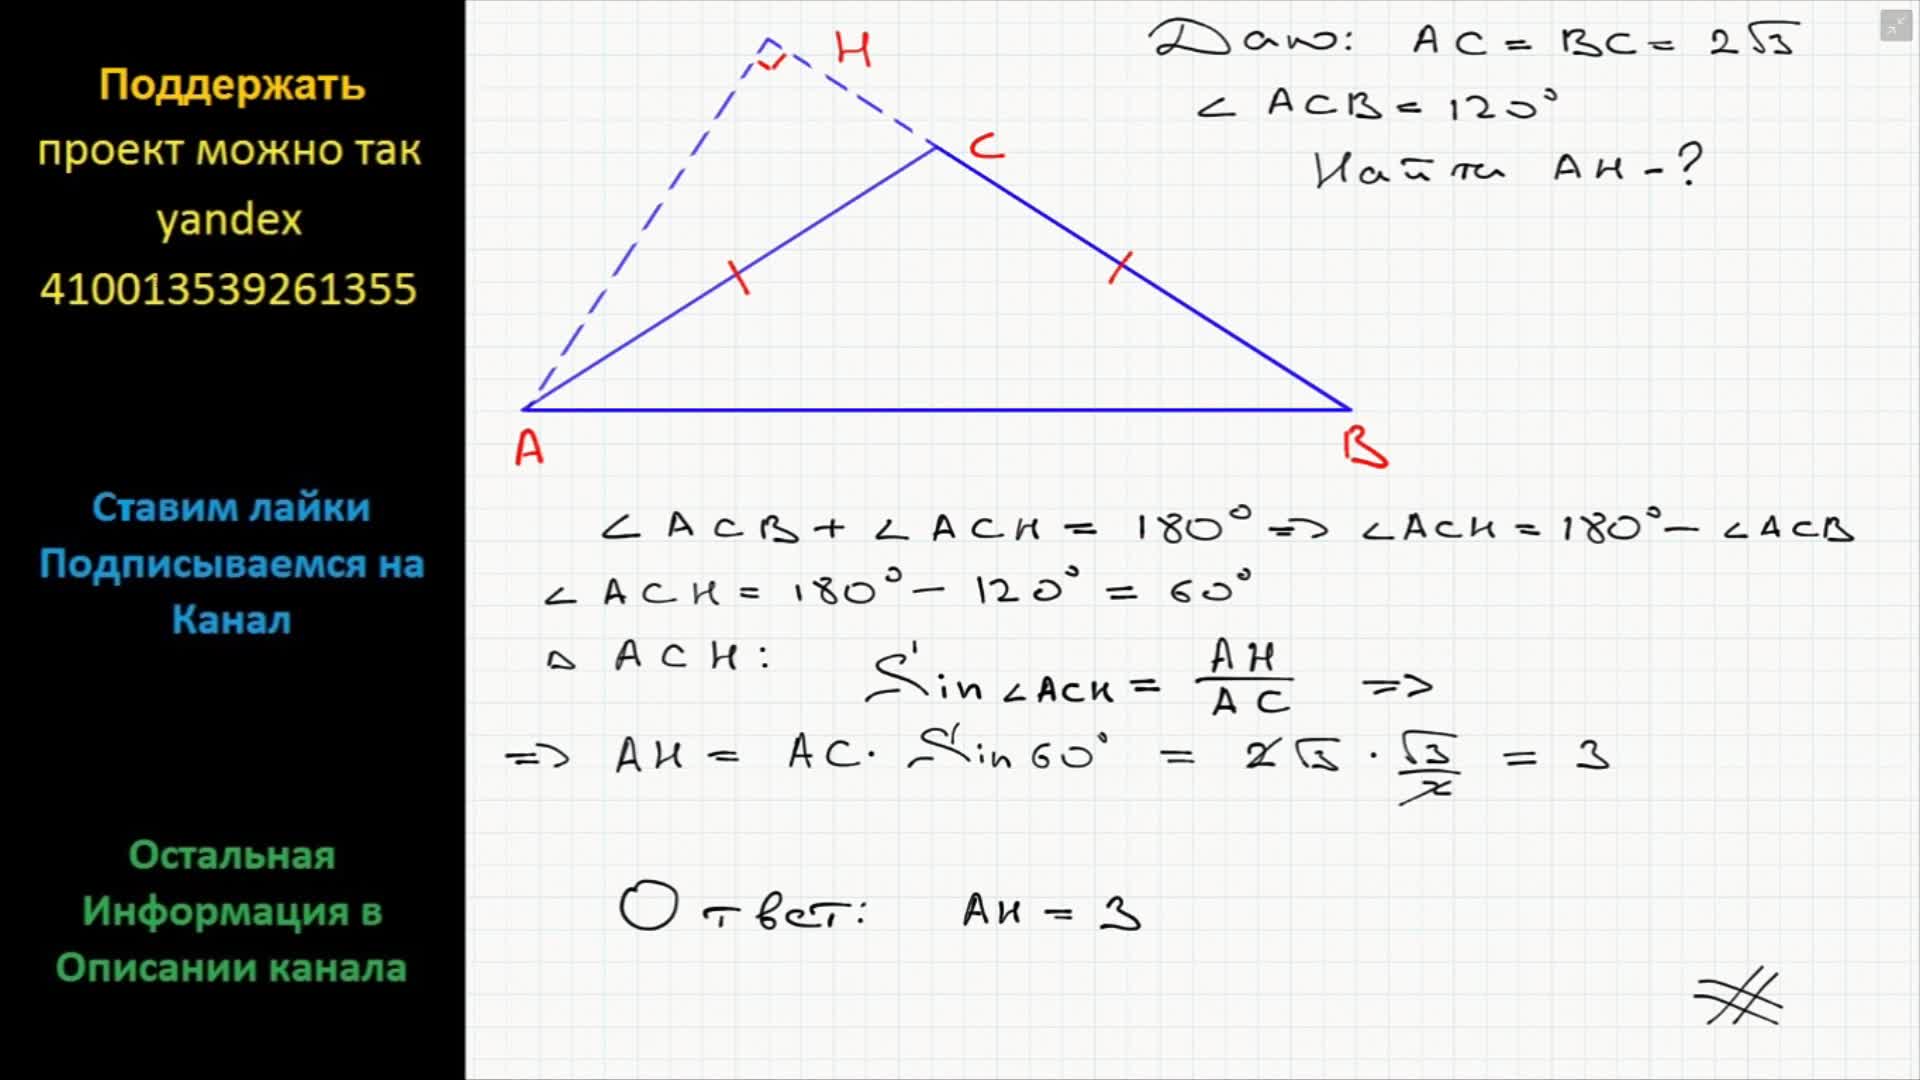 В треугольнике абс угол б 35. Угол противолежащий основанию равнобедренного треугольника. Угол противолежащий основанию равнобедренного треугольника 120. Угол,противолежащий оснваниюравнобедренного треугольника Раве 120. Угол противолежащий основанию равнобедренного треугольника равен 120.